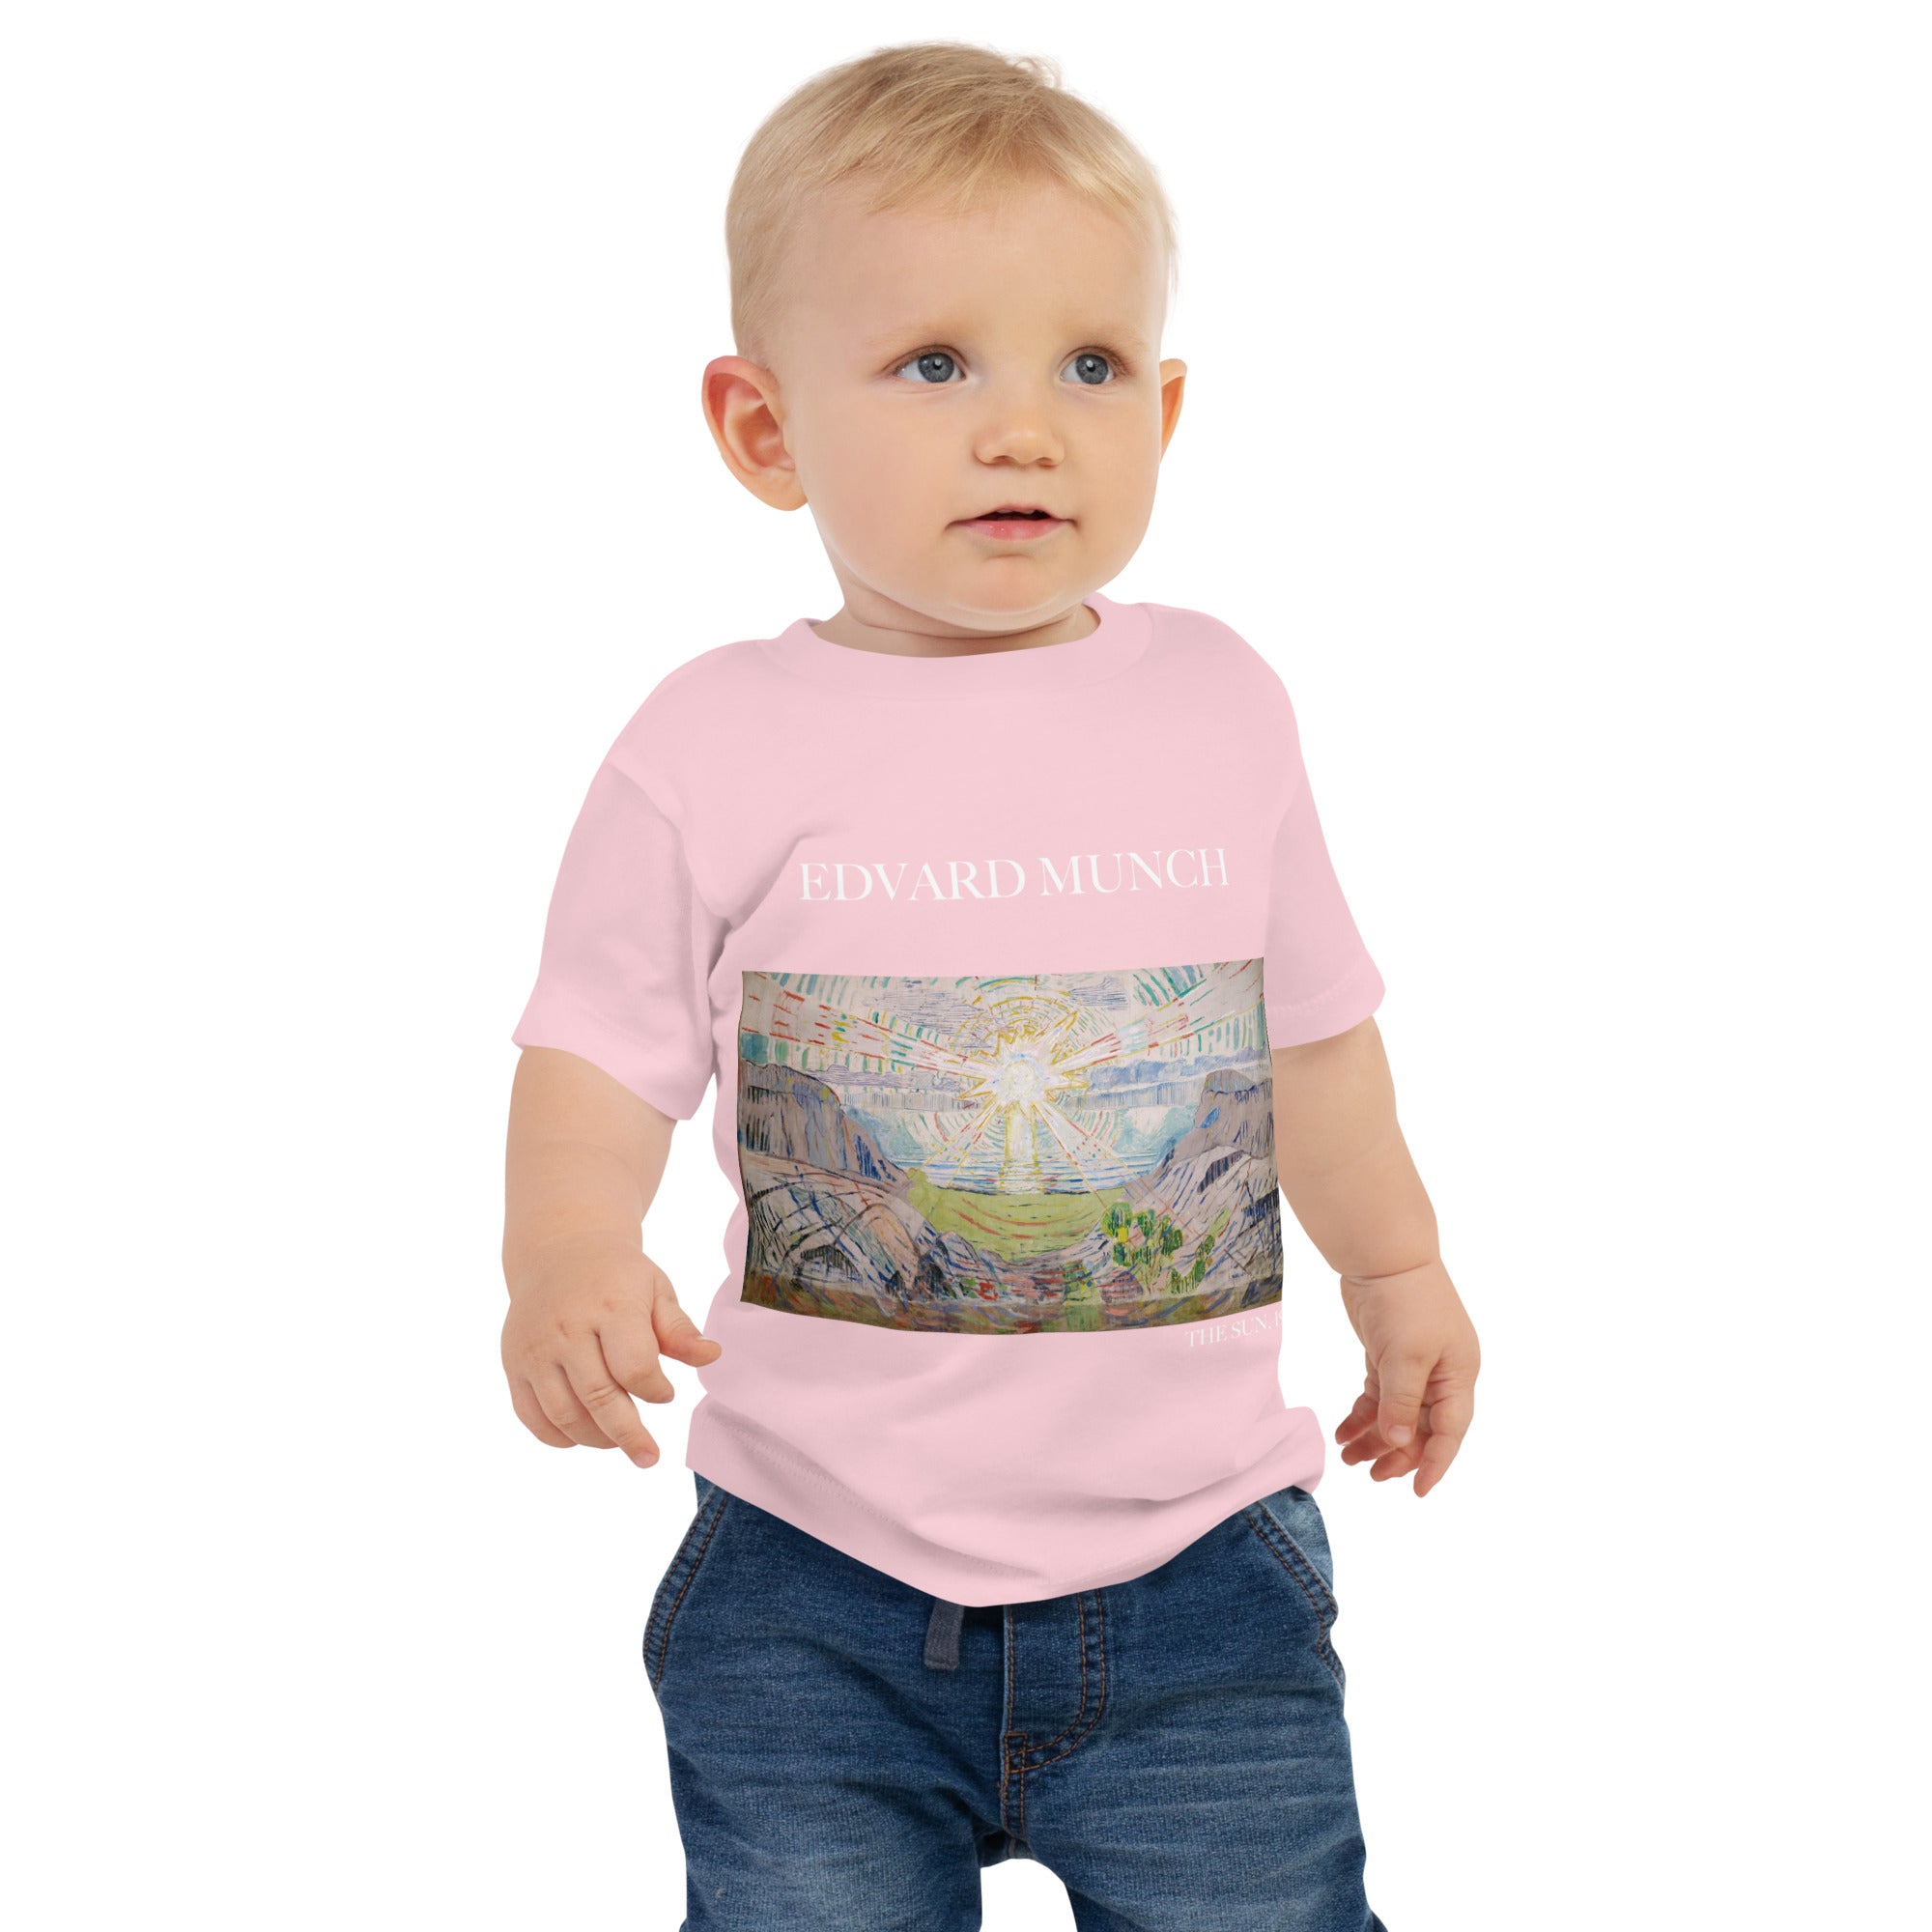 Edvard Munch 'The Sun' Famous Painting Baby Staple T-Shirt | Premium Baby Art Tee